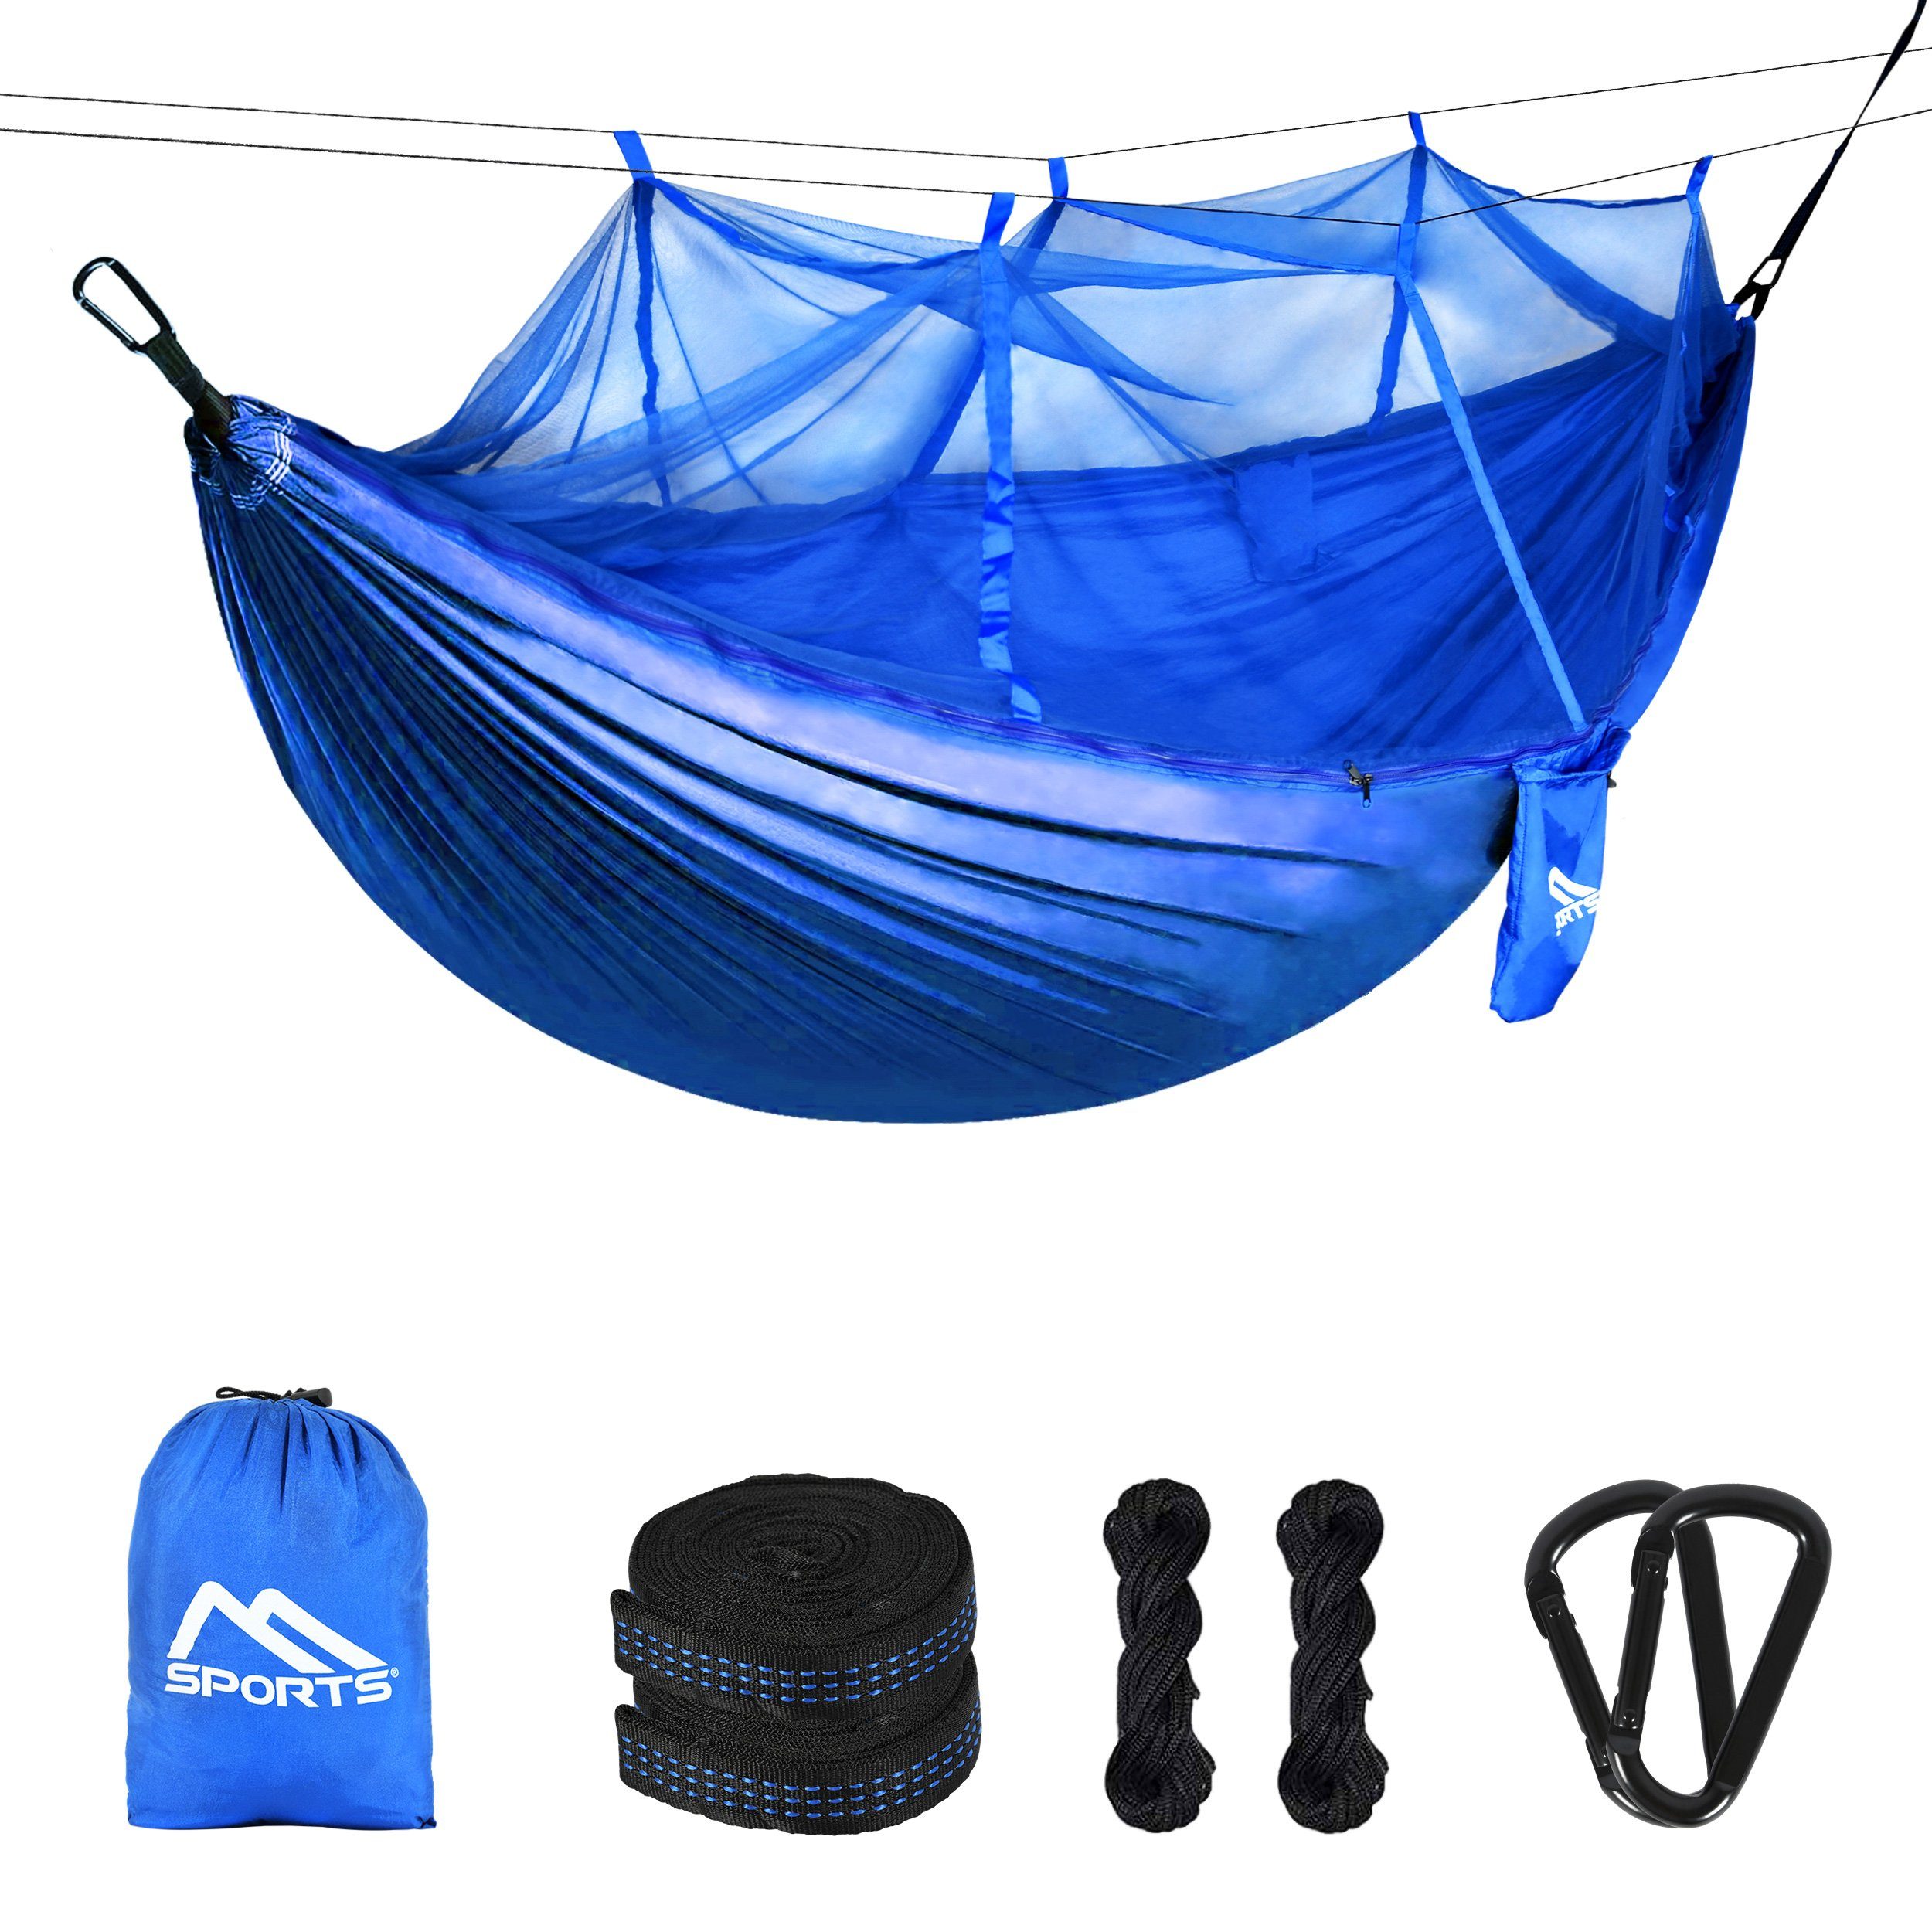 MSports® Hängematte Outdoor Moskitonetz Hängematte Königsblau für Camping MSports mit extra Sonnenliege leicht